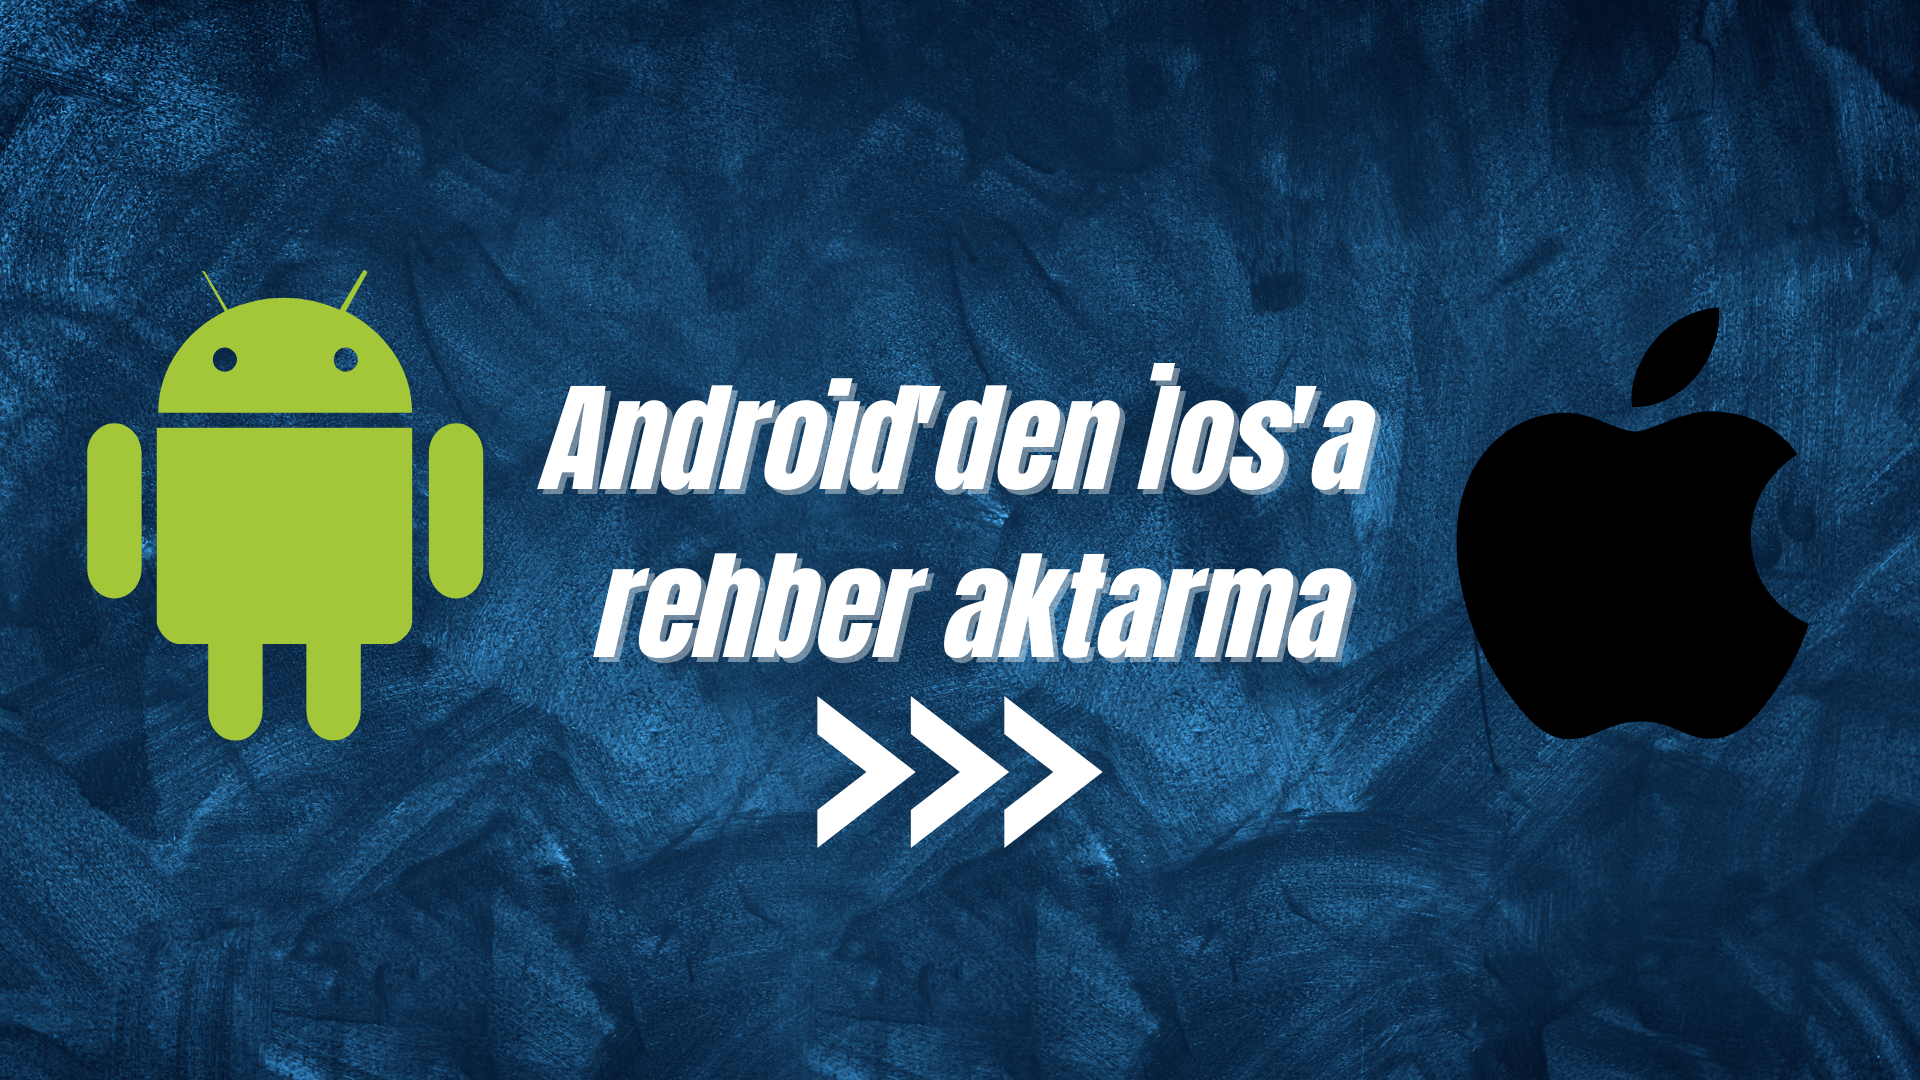 android'den ios'a rehber aktarma